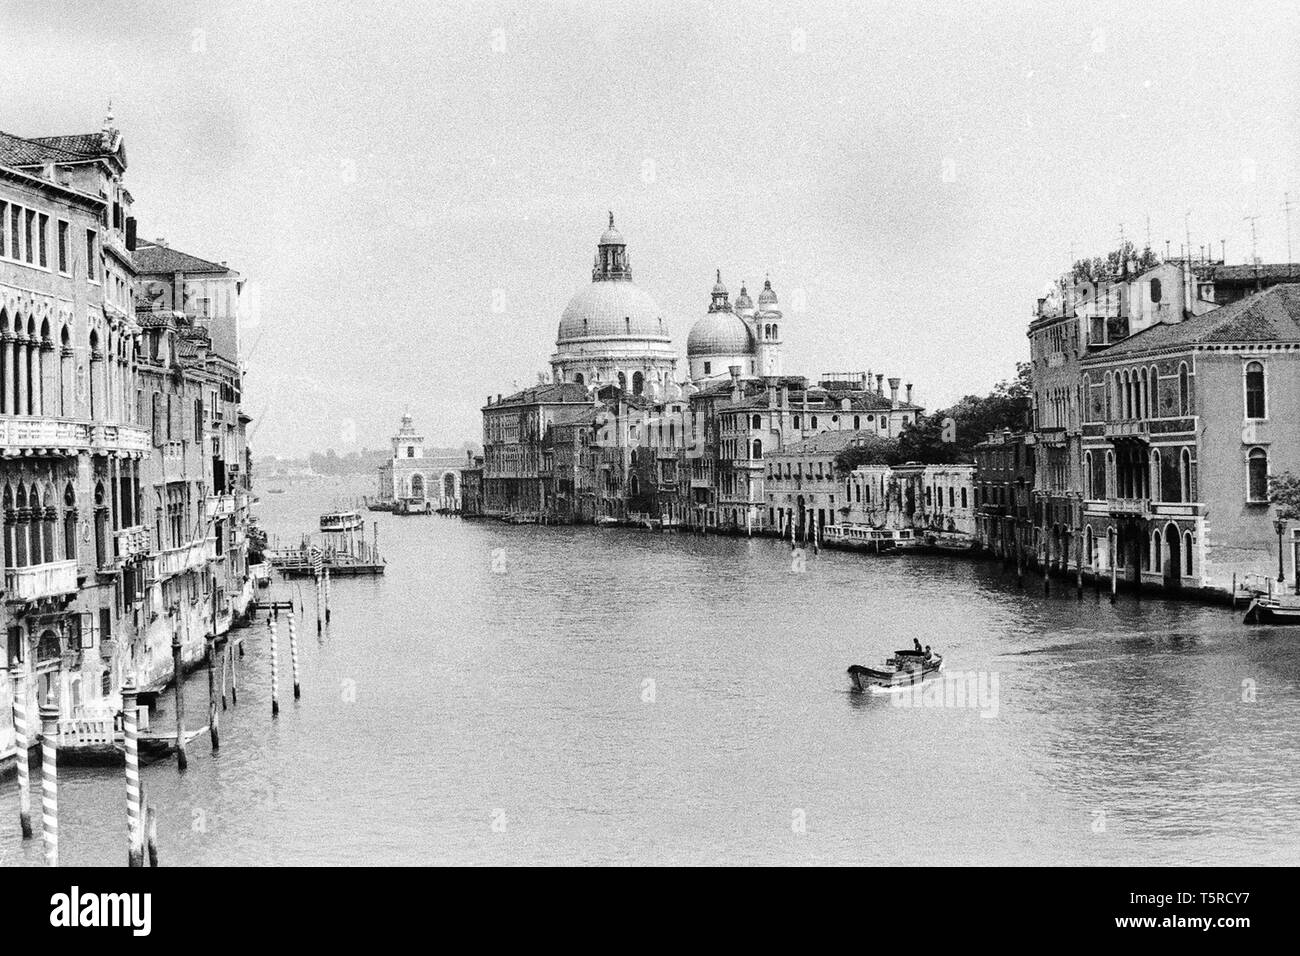 Venezia, Italia, 1980 - foto in bianco e nero - panoramica del Canal Grande dal ponte dell'Accademia, con la Basilica di Santa Maria della Salute in background Foto Stock